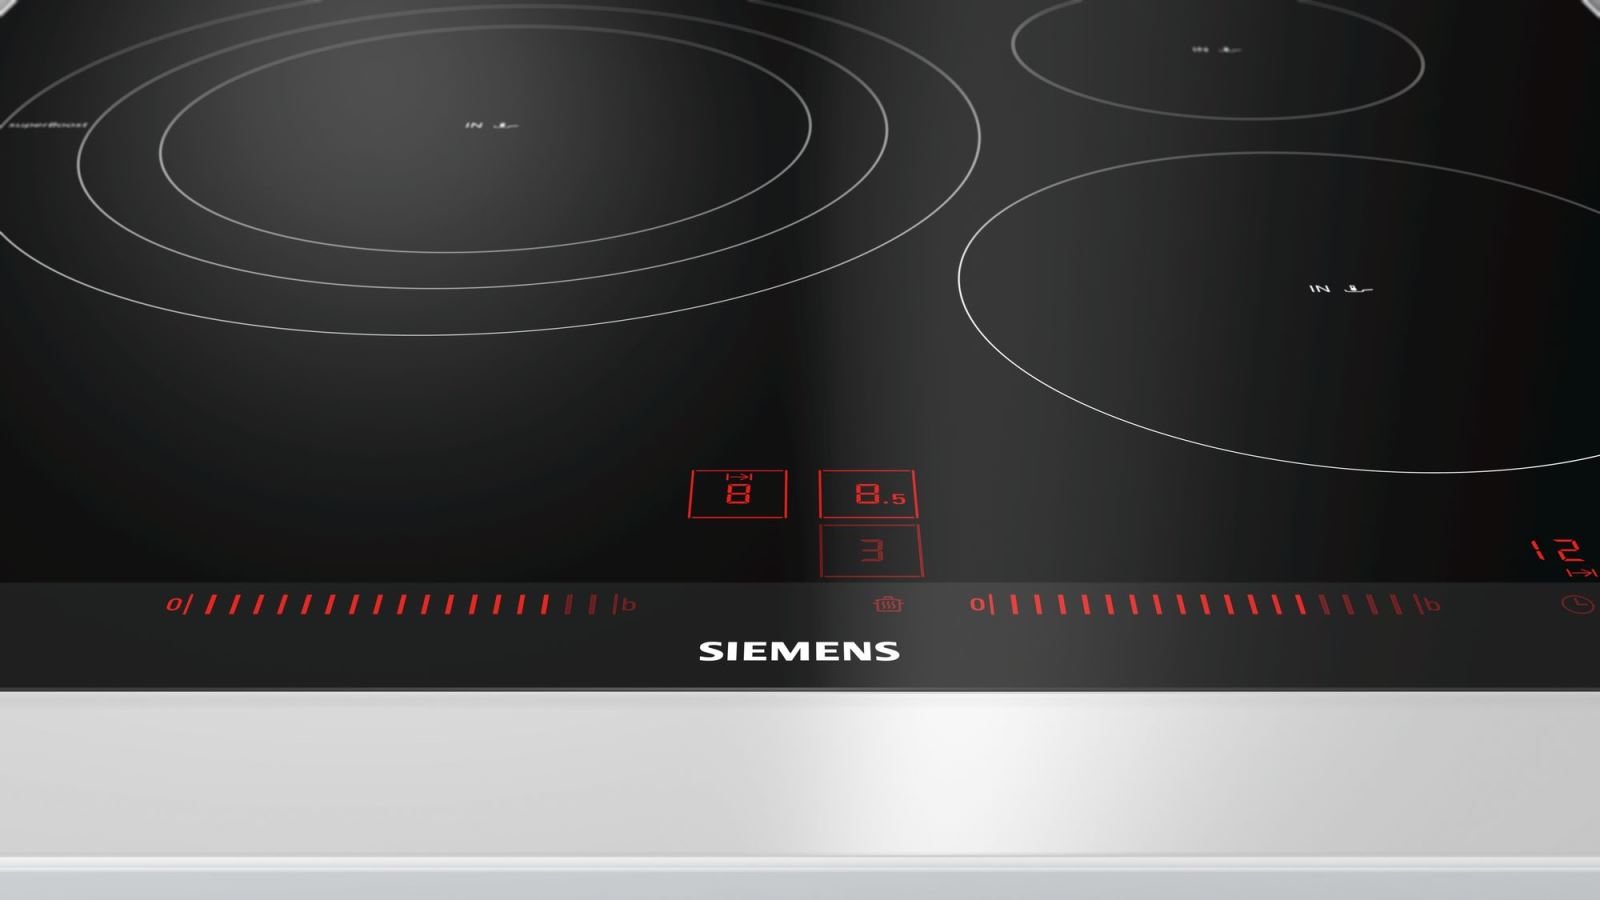 Bếp Từ Siemens EH675LDC1E, Bếp Từ Siemens EH675FJC1E, Bếp Từ Siemens EH651FDC1E, Bếp Từ Siemens EH651BJB1E, Bếp Từ Siemens EU631BJB2E, bếp từ siemens eh651fjb1e, bếp từ siemens có tốt không, bếp từ siemens 2 bếp, bếp từ siemens eu631bjb2e, bếp từ siemens eh651fjb2e